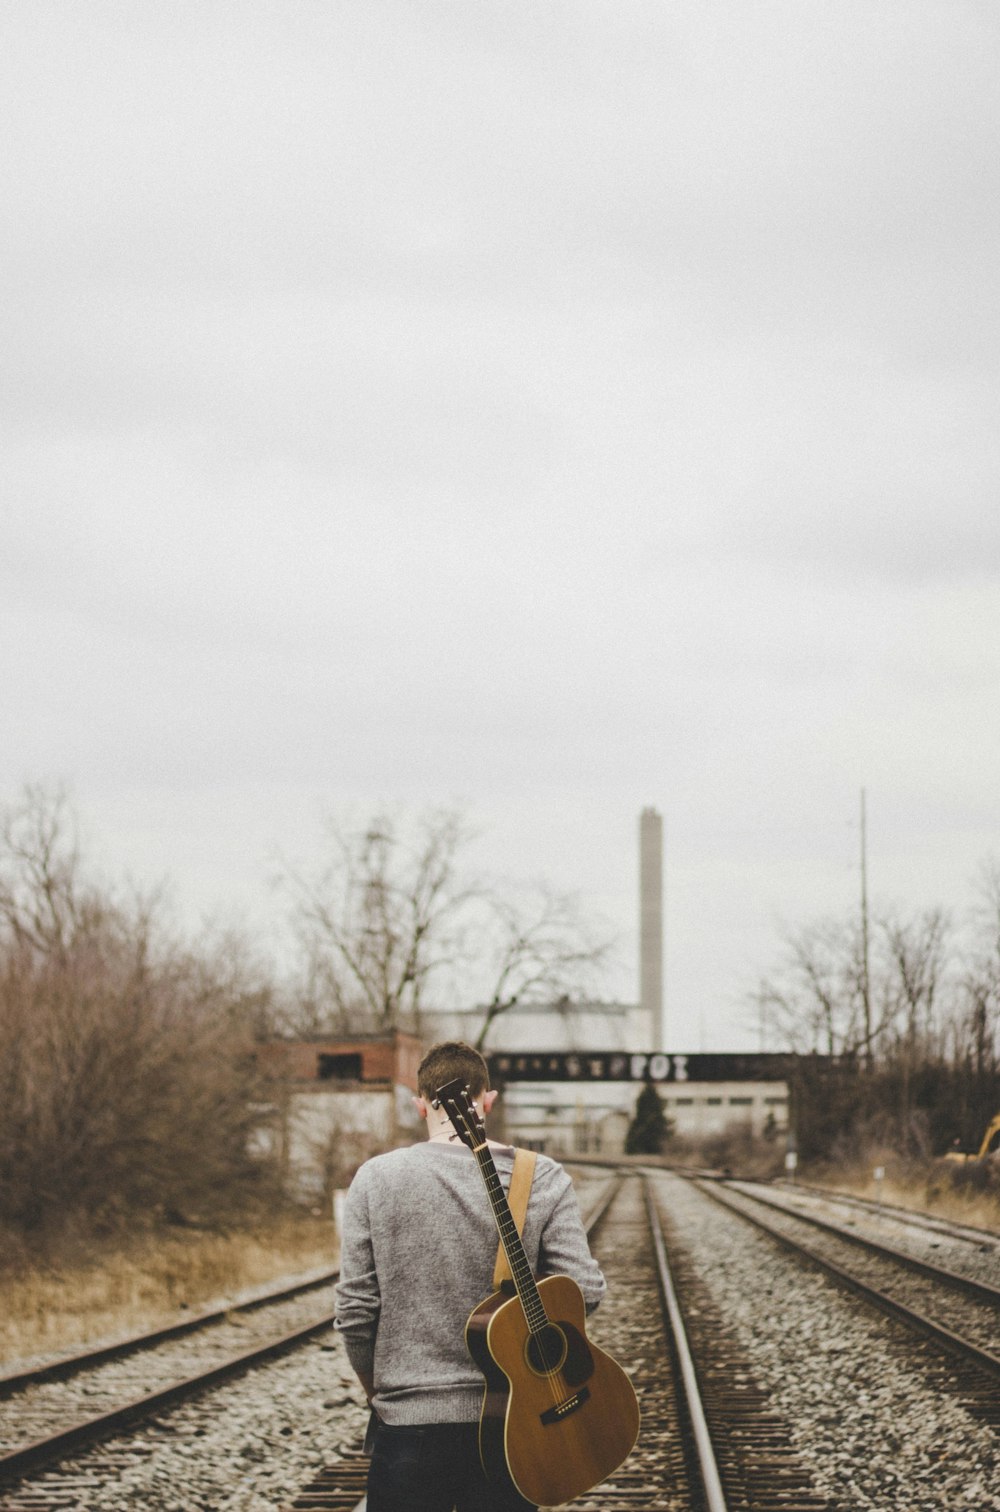 hombre que lleva una guitarra caminando sobre los rieles del tren